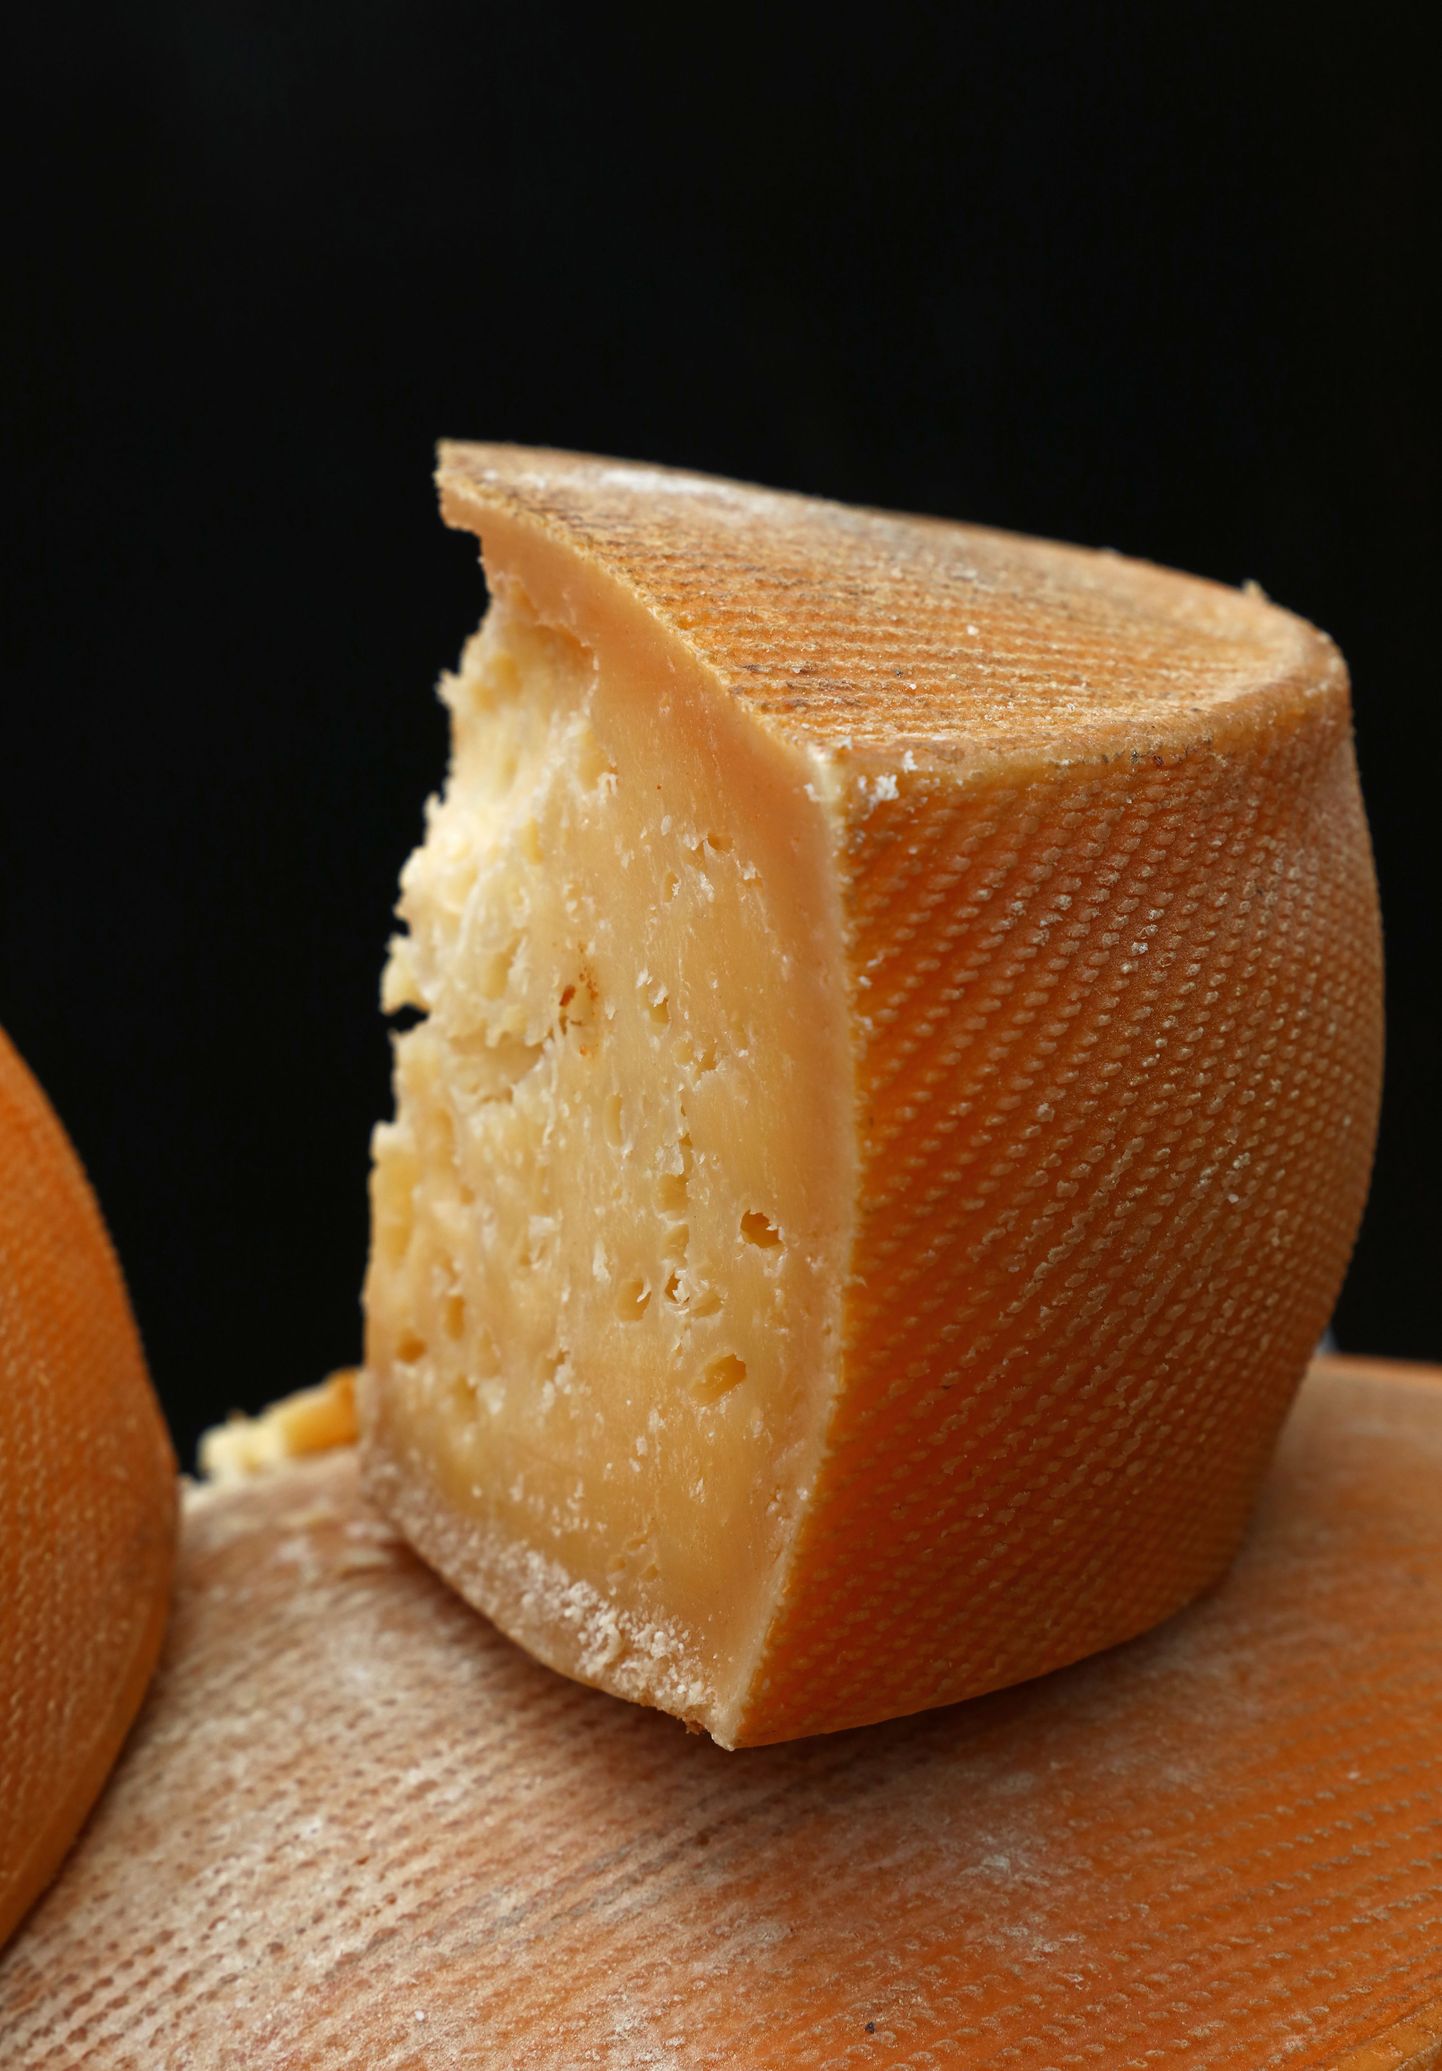 Väike hallitus kõval juustul ei tähenda, et terve juust tuleks minema visata.